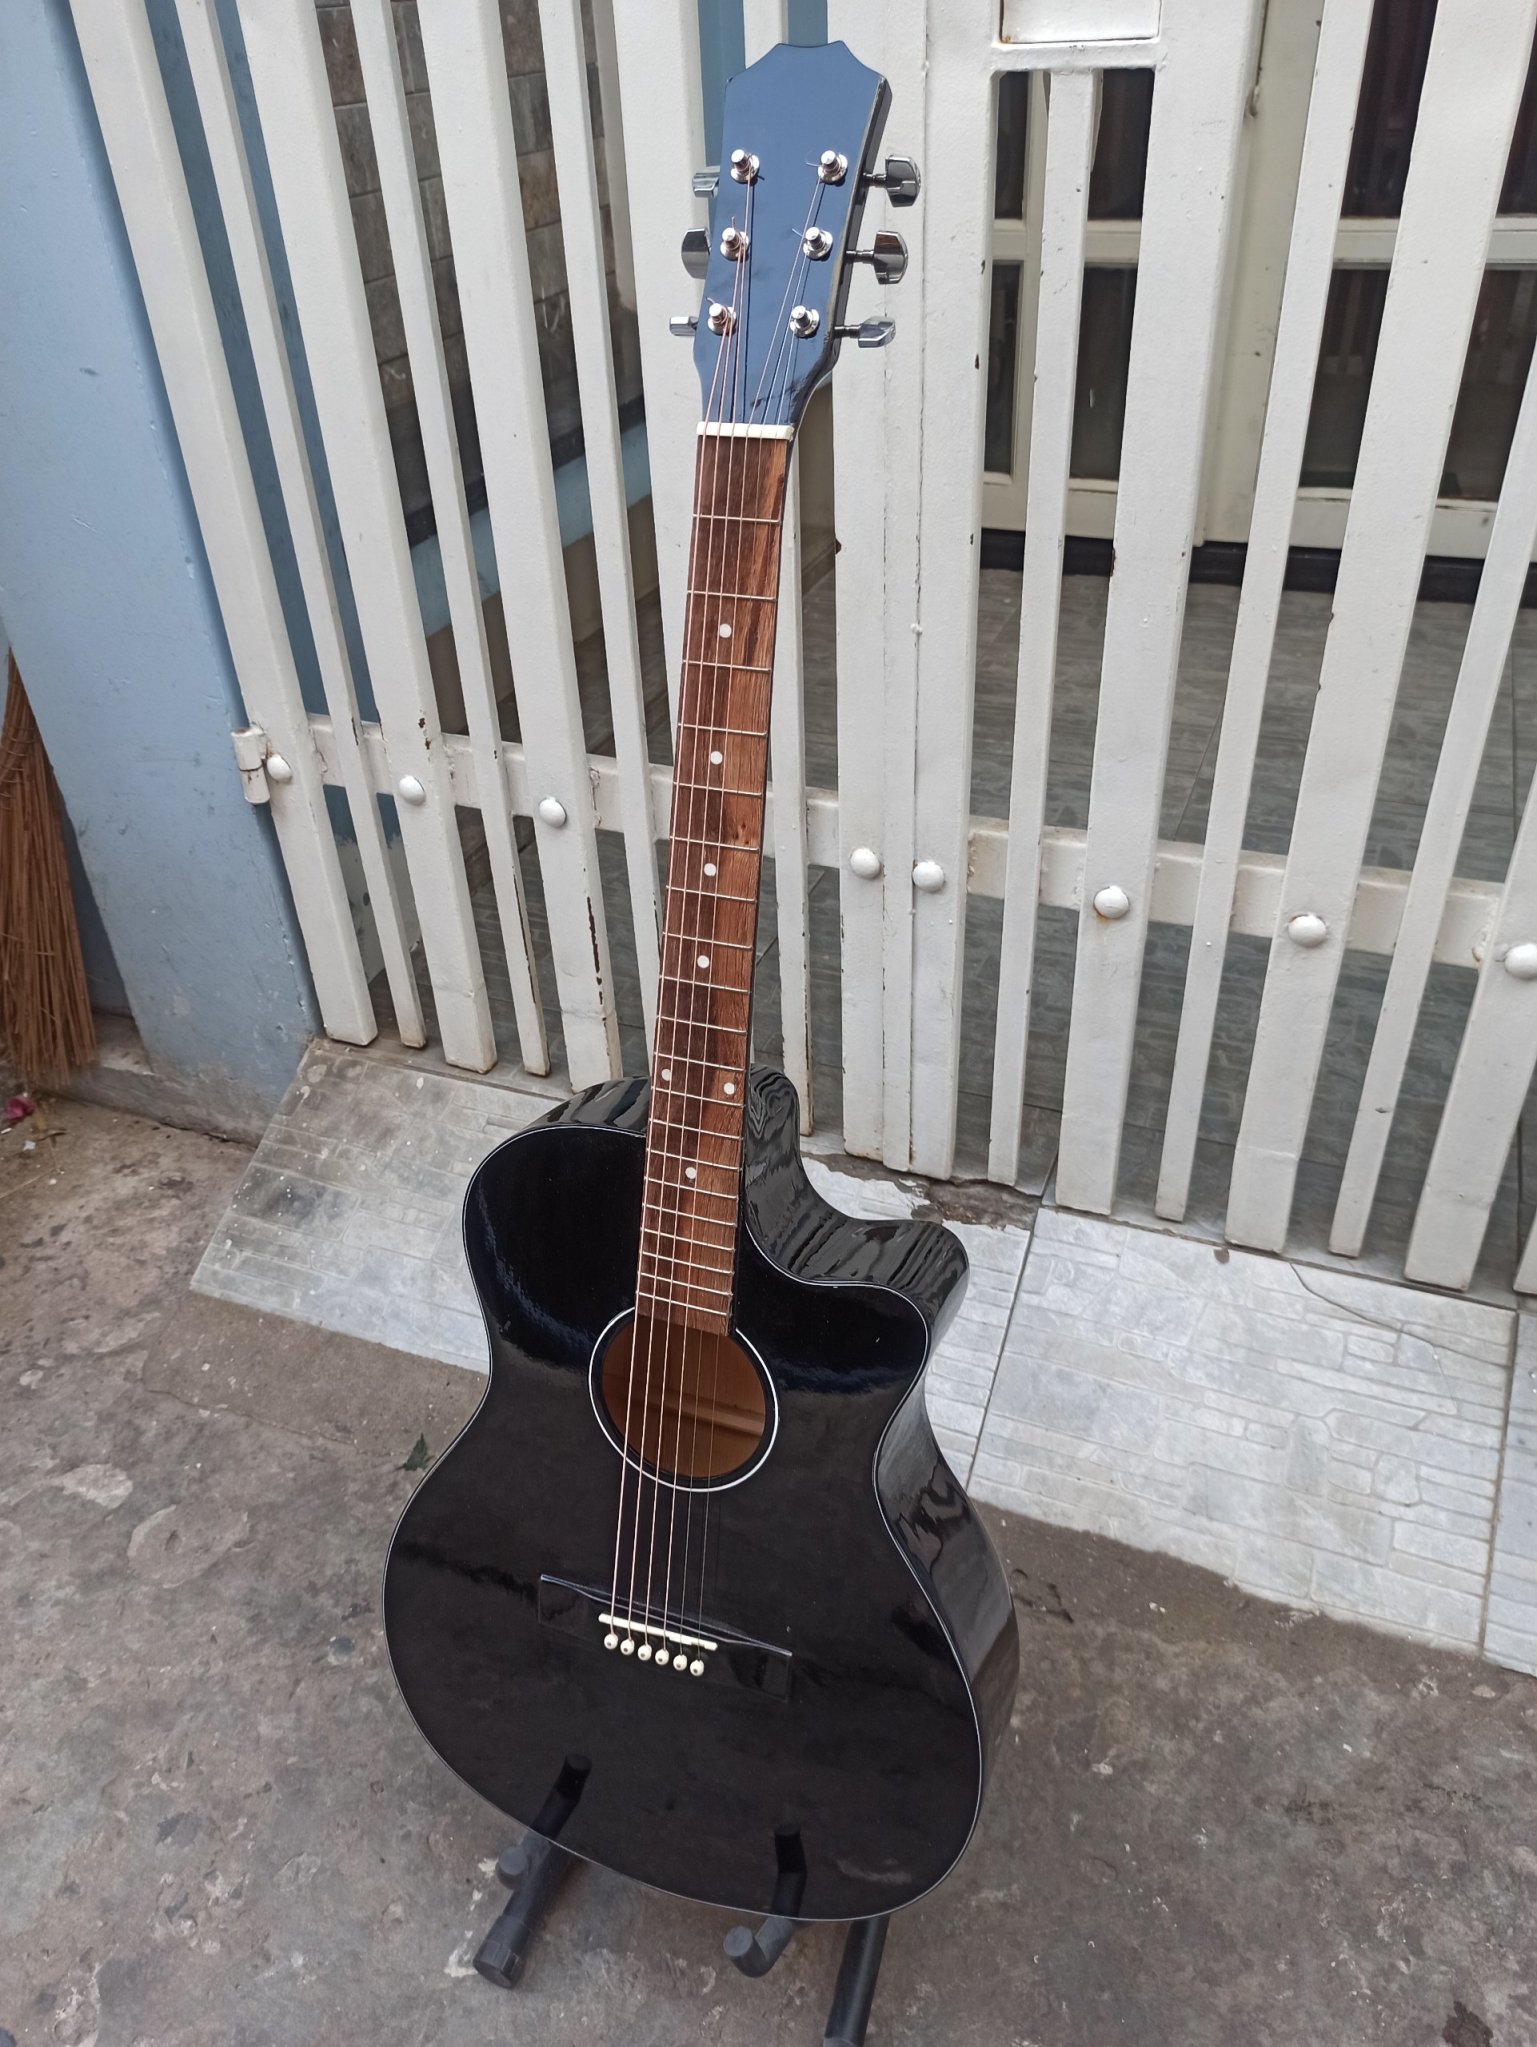 Đàn Guitar Acoustic M300 âm thanh tự nhiên và chân thật, có độ bền cao, dễ dàng sử dụng cho...